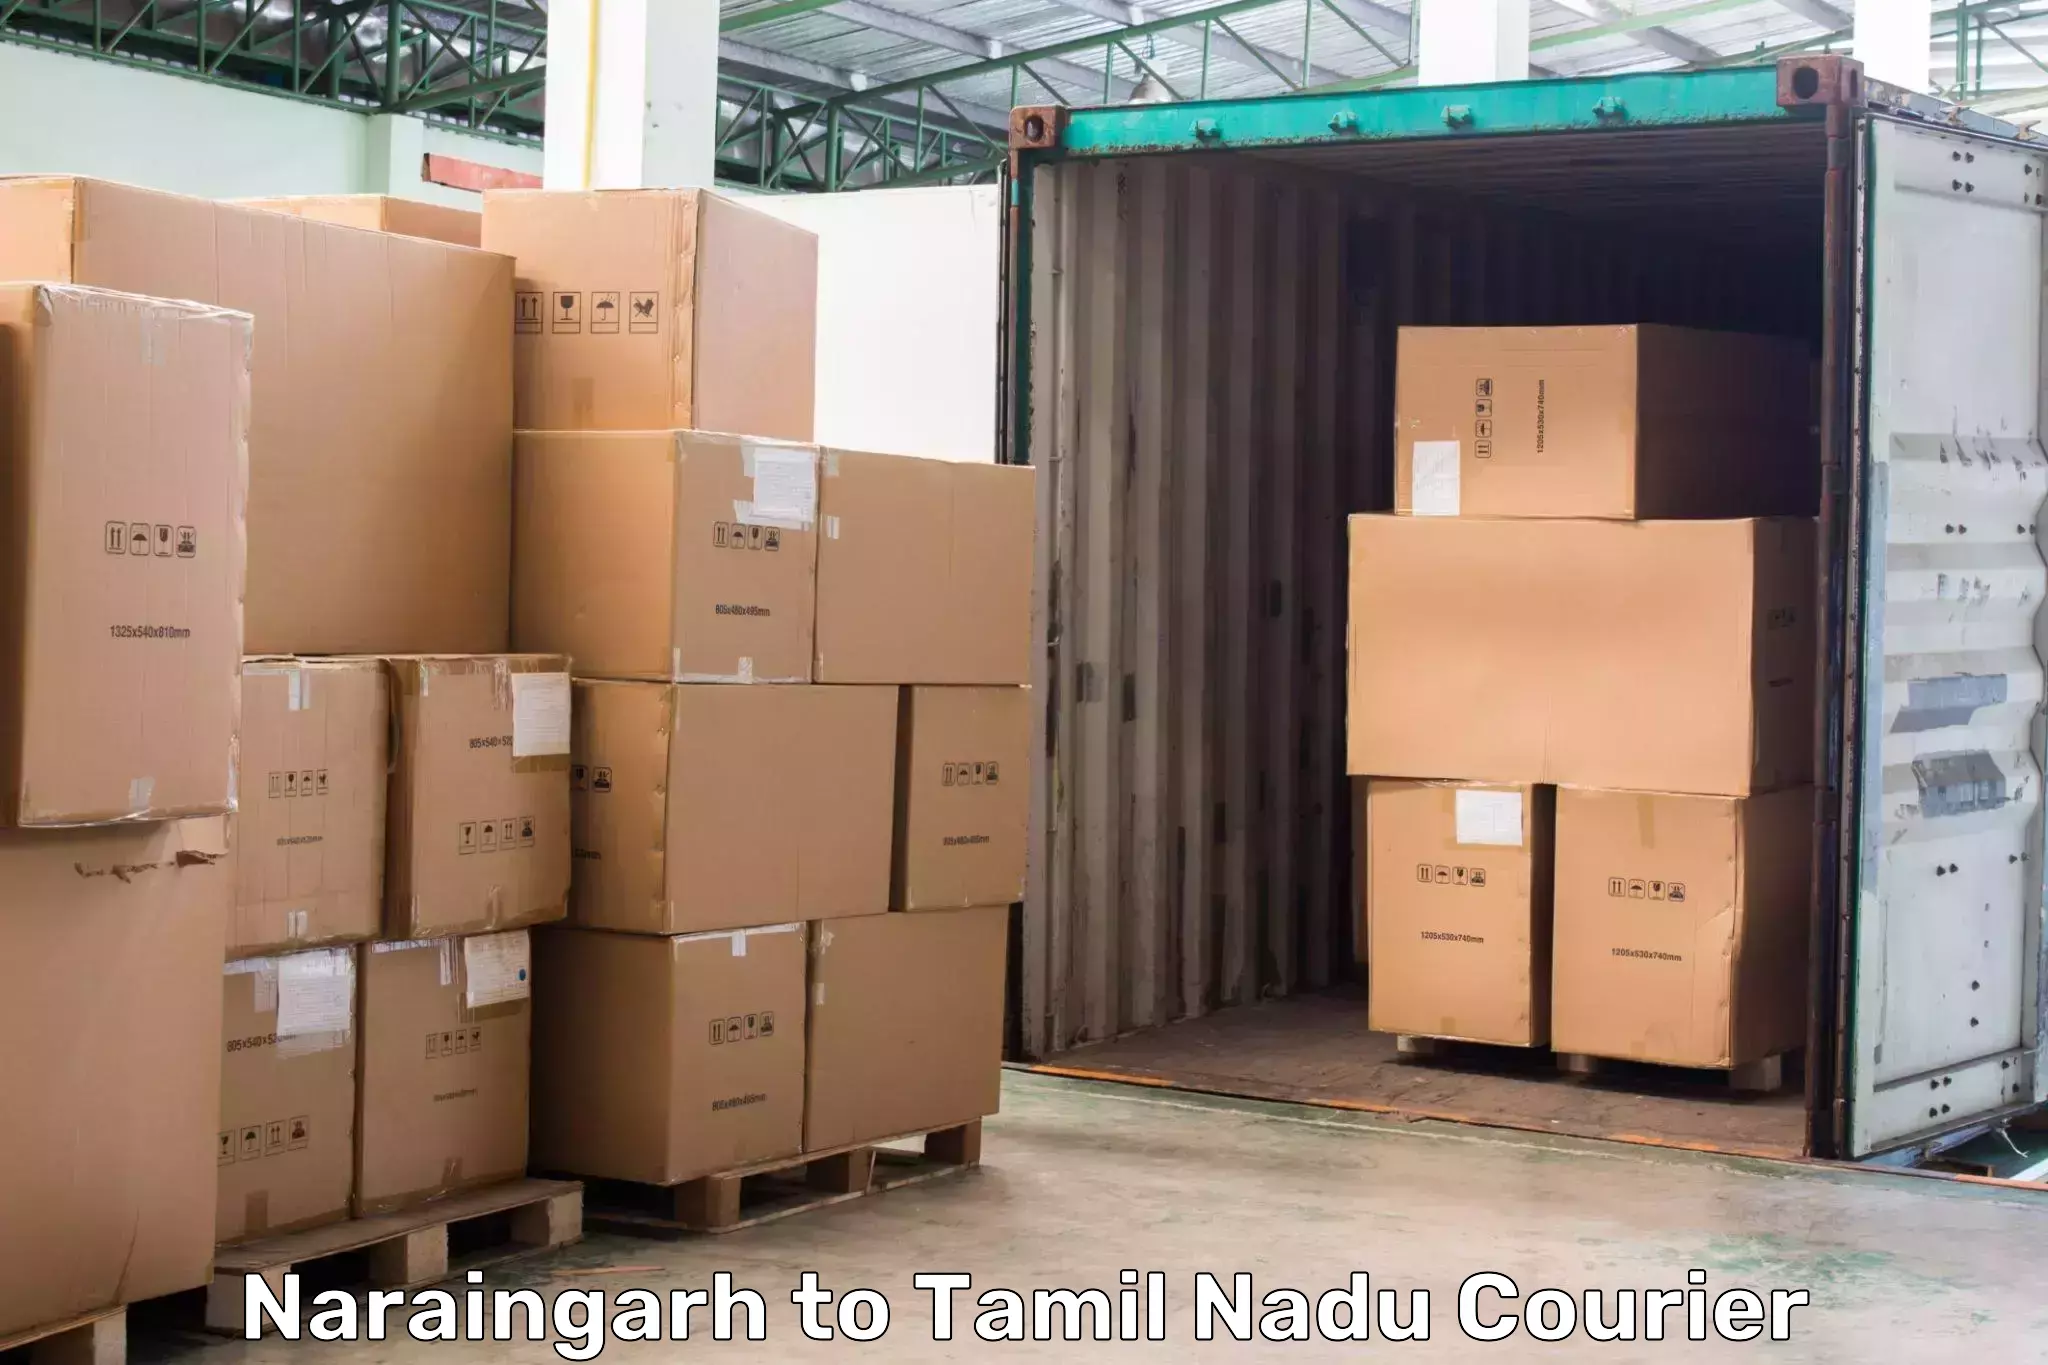 Doorstep delivery service Naraingarh to Udumalpet